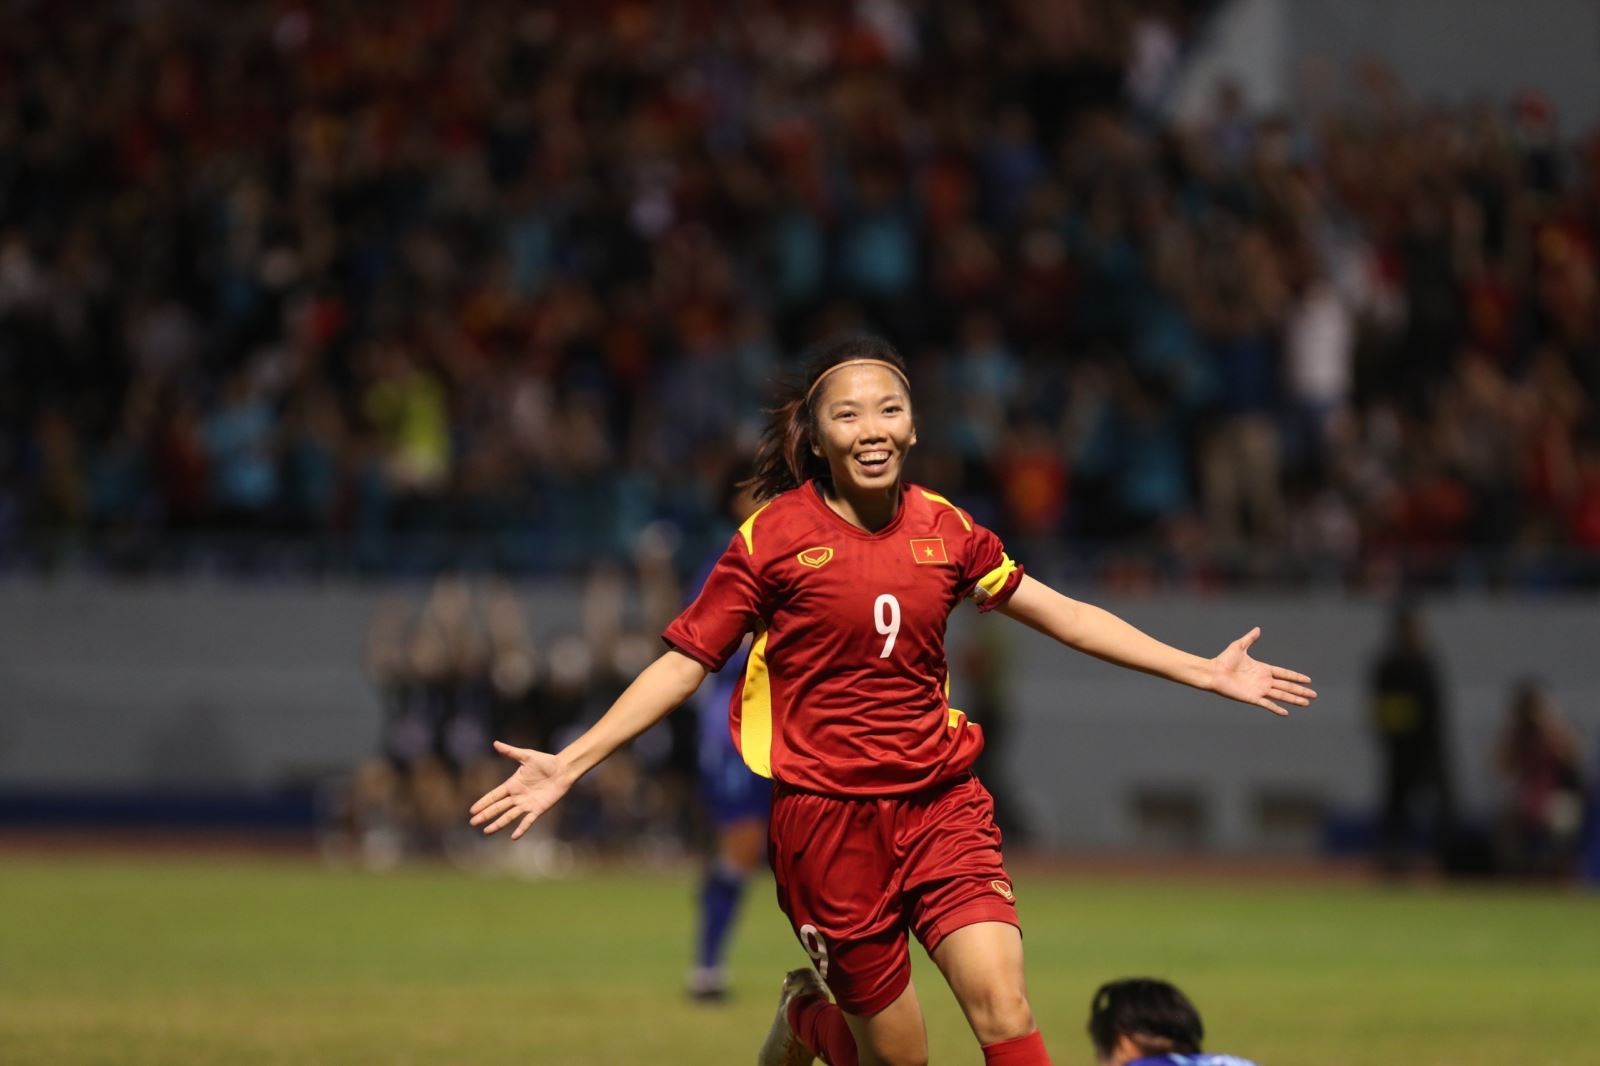 Tuyển nữ Việt Nam xuất sắc giành HCV môn bóng đá nữ SEA Games lần thứ 3 liên tiếp